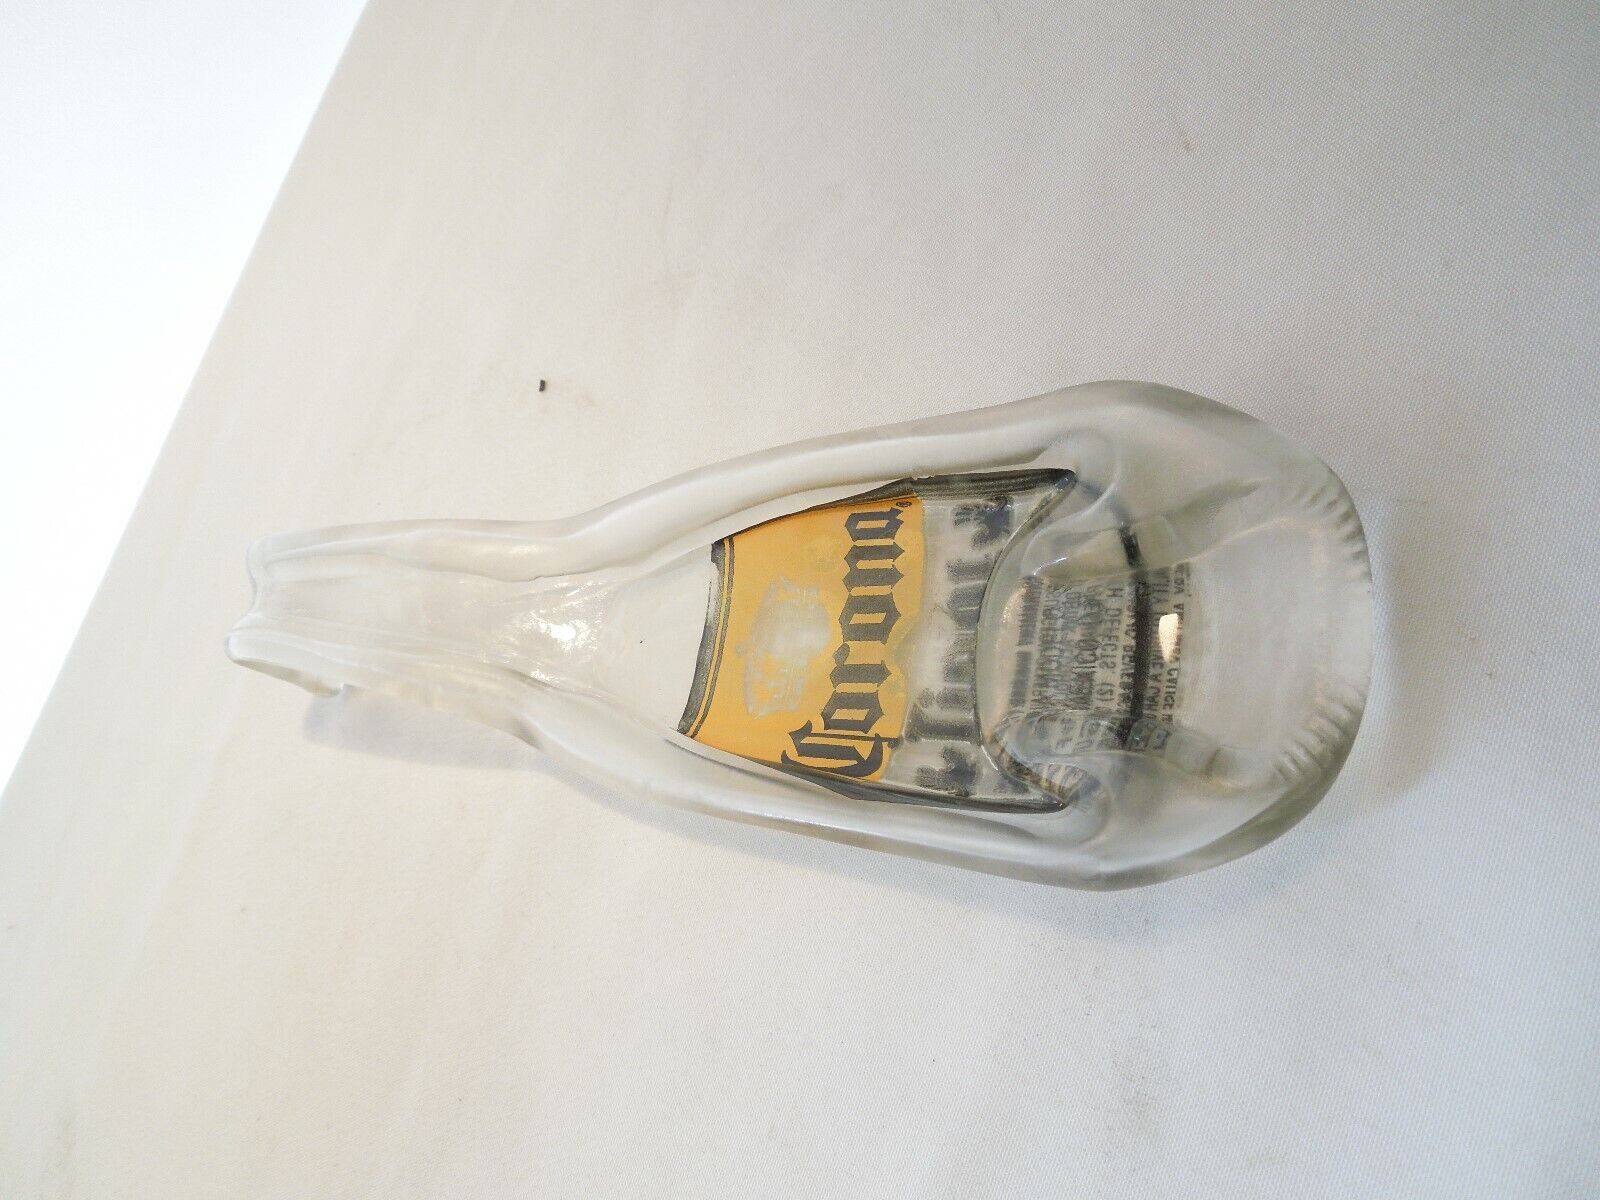 Corona Light Glass Bottle Spoon Rest / Holder / Ashtray 8 3/4" Long